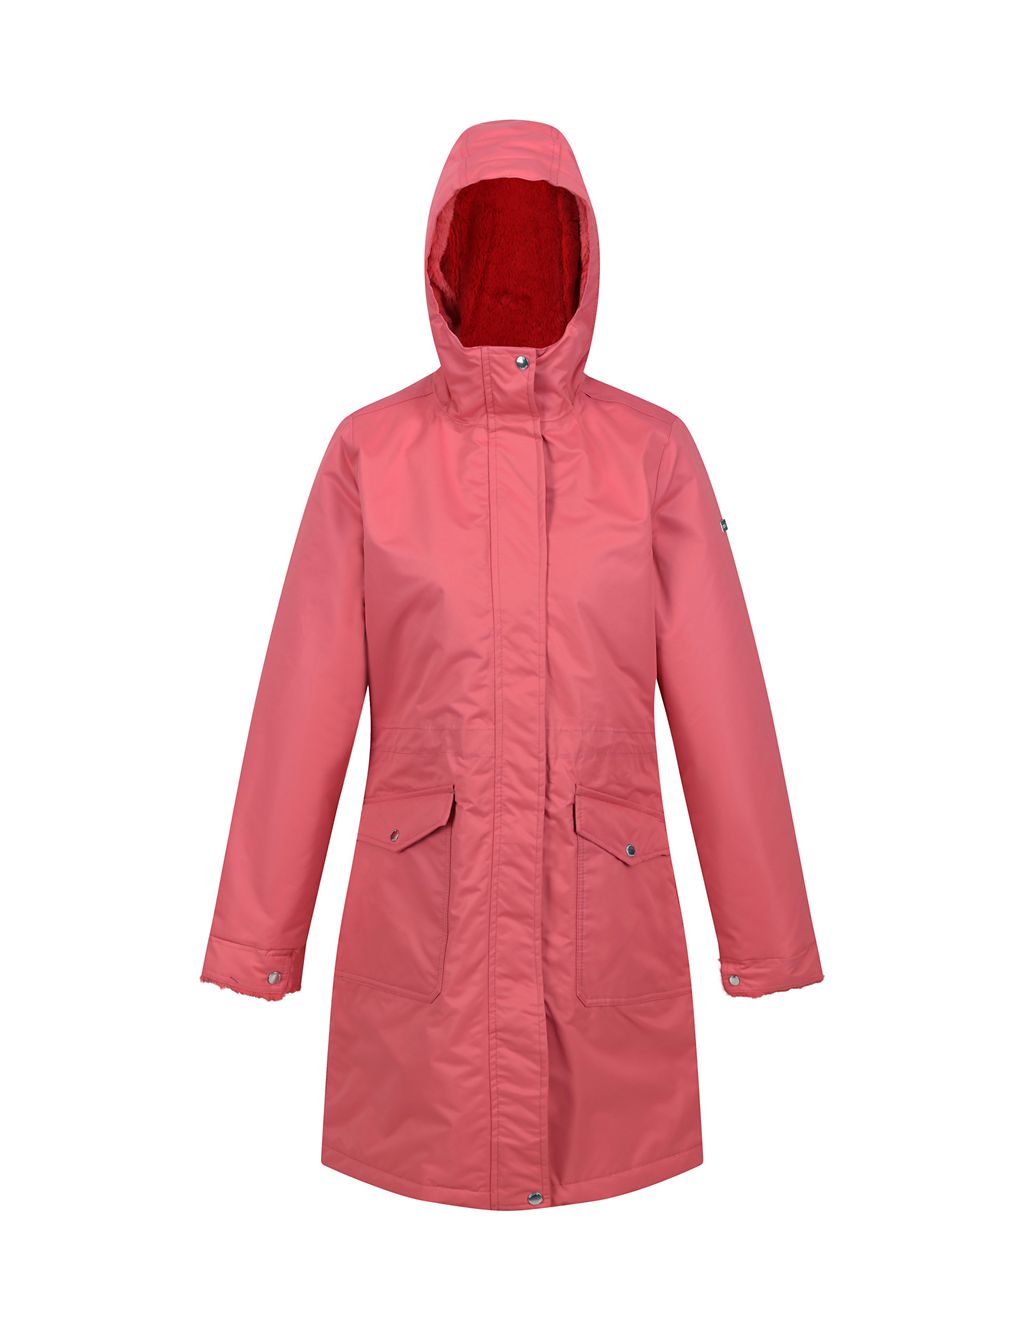 Romine Waterproof Hooded Parka Coat 1 of 8